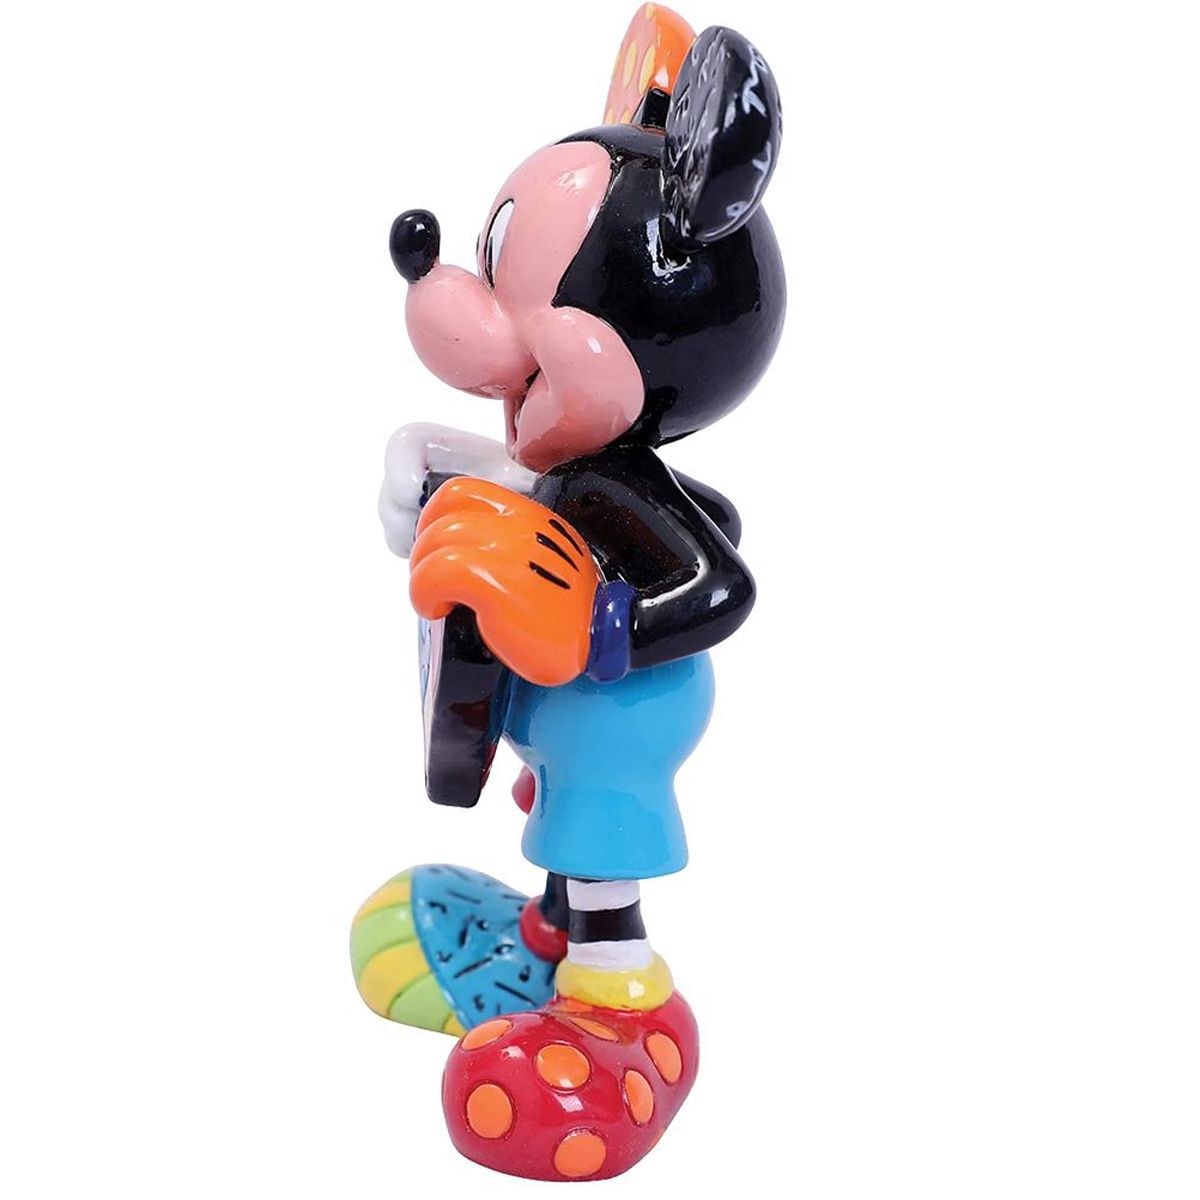 Mickey Figurine Collection By Romero Britto